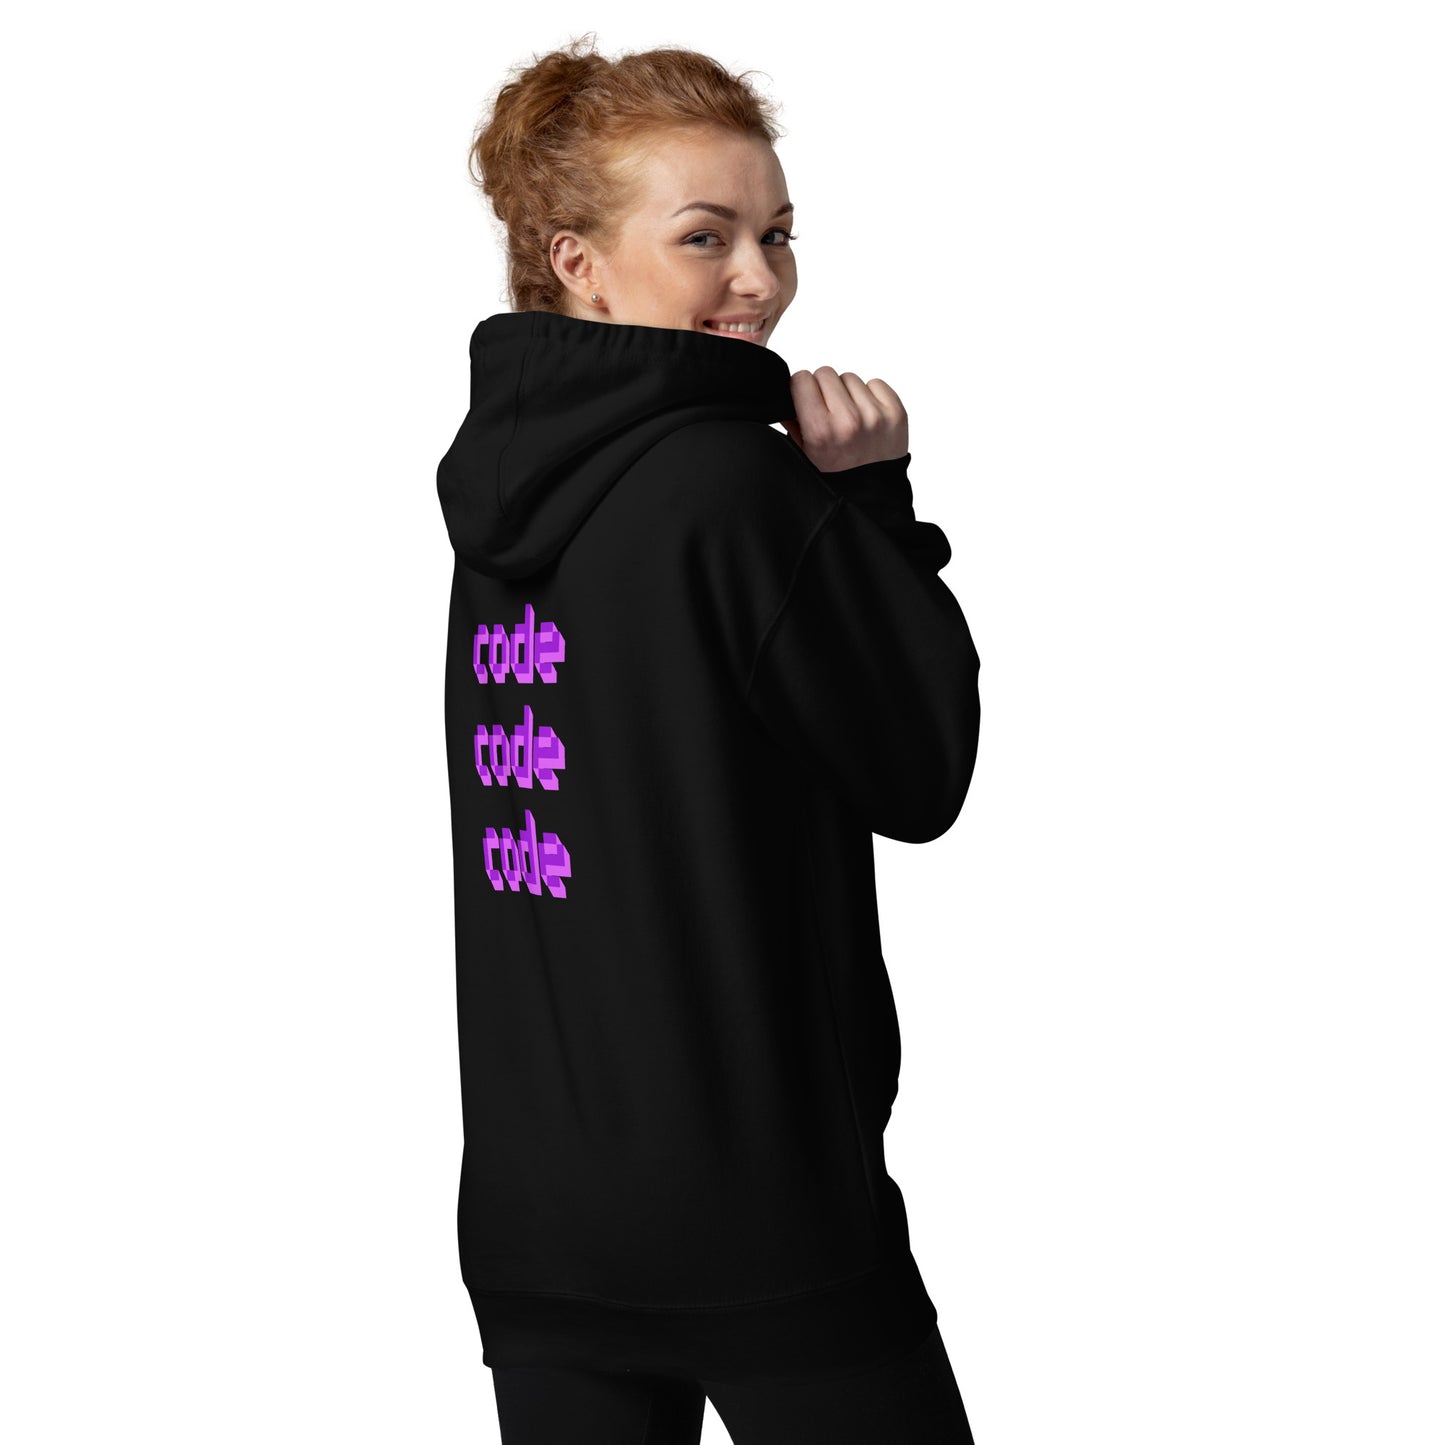 'code code code' unisex hoodie